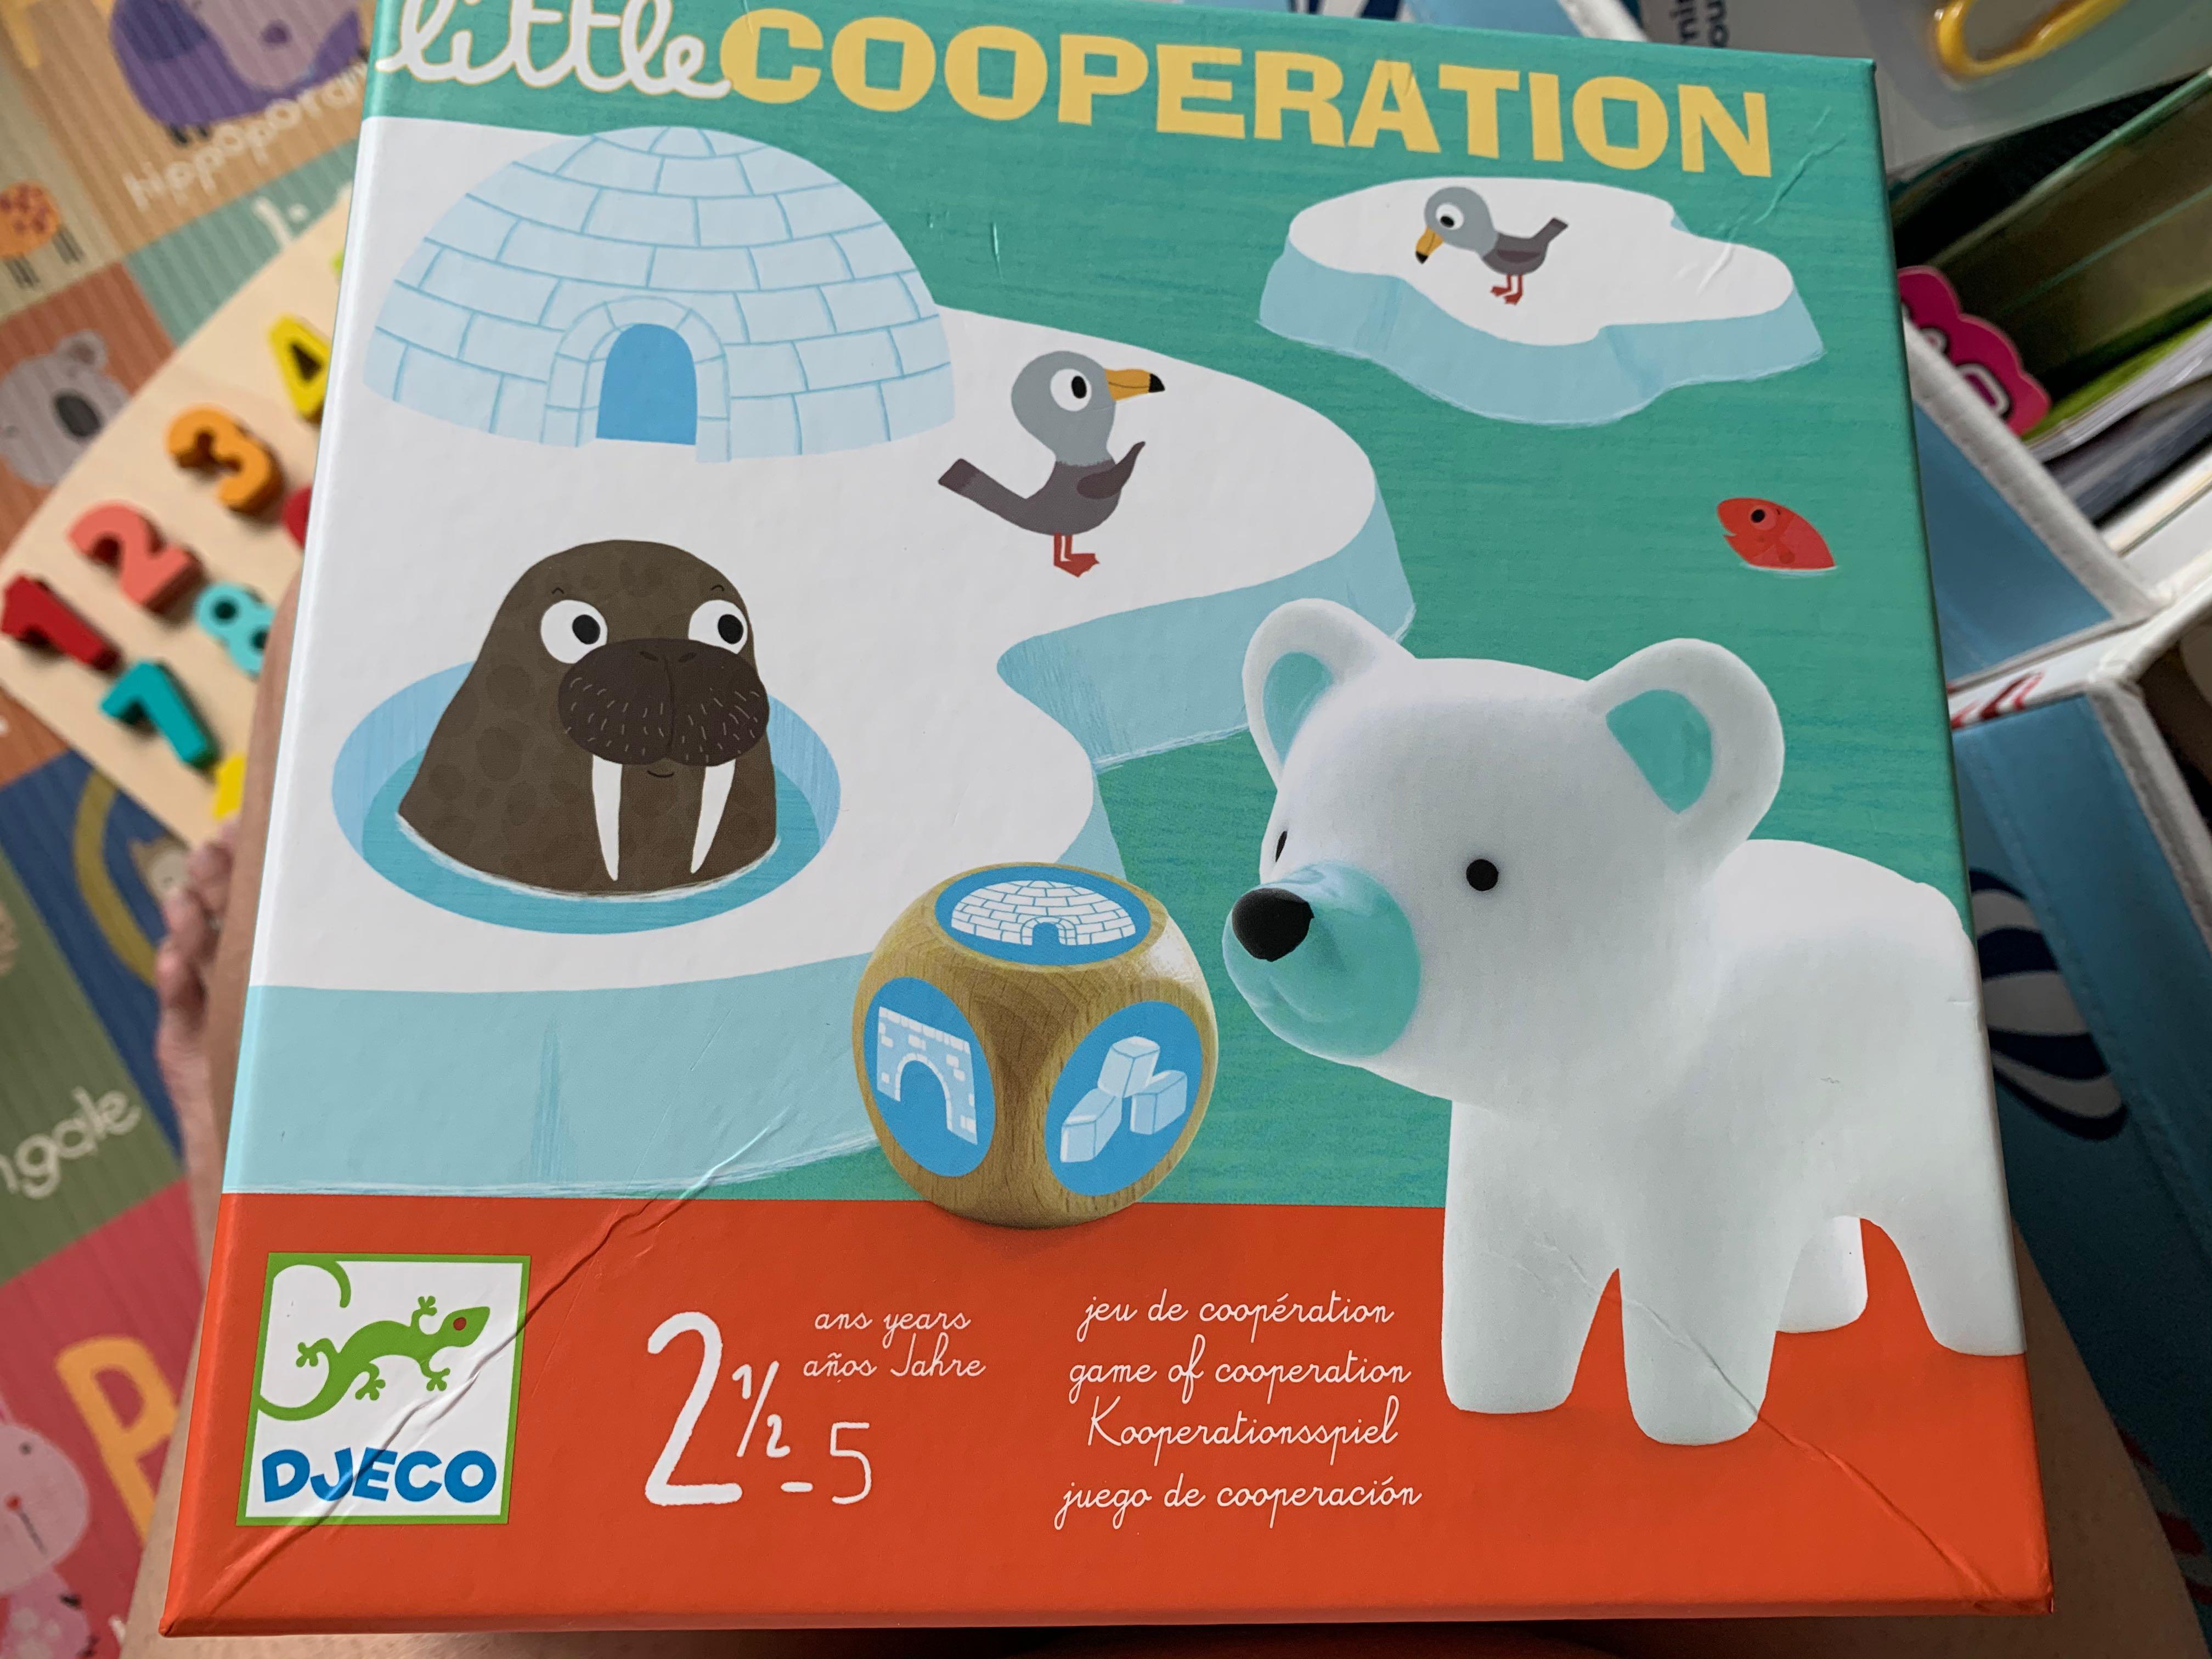 Little cooperation - Djeco